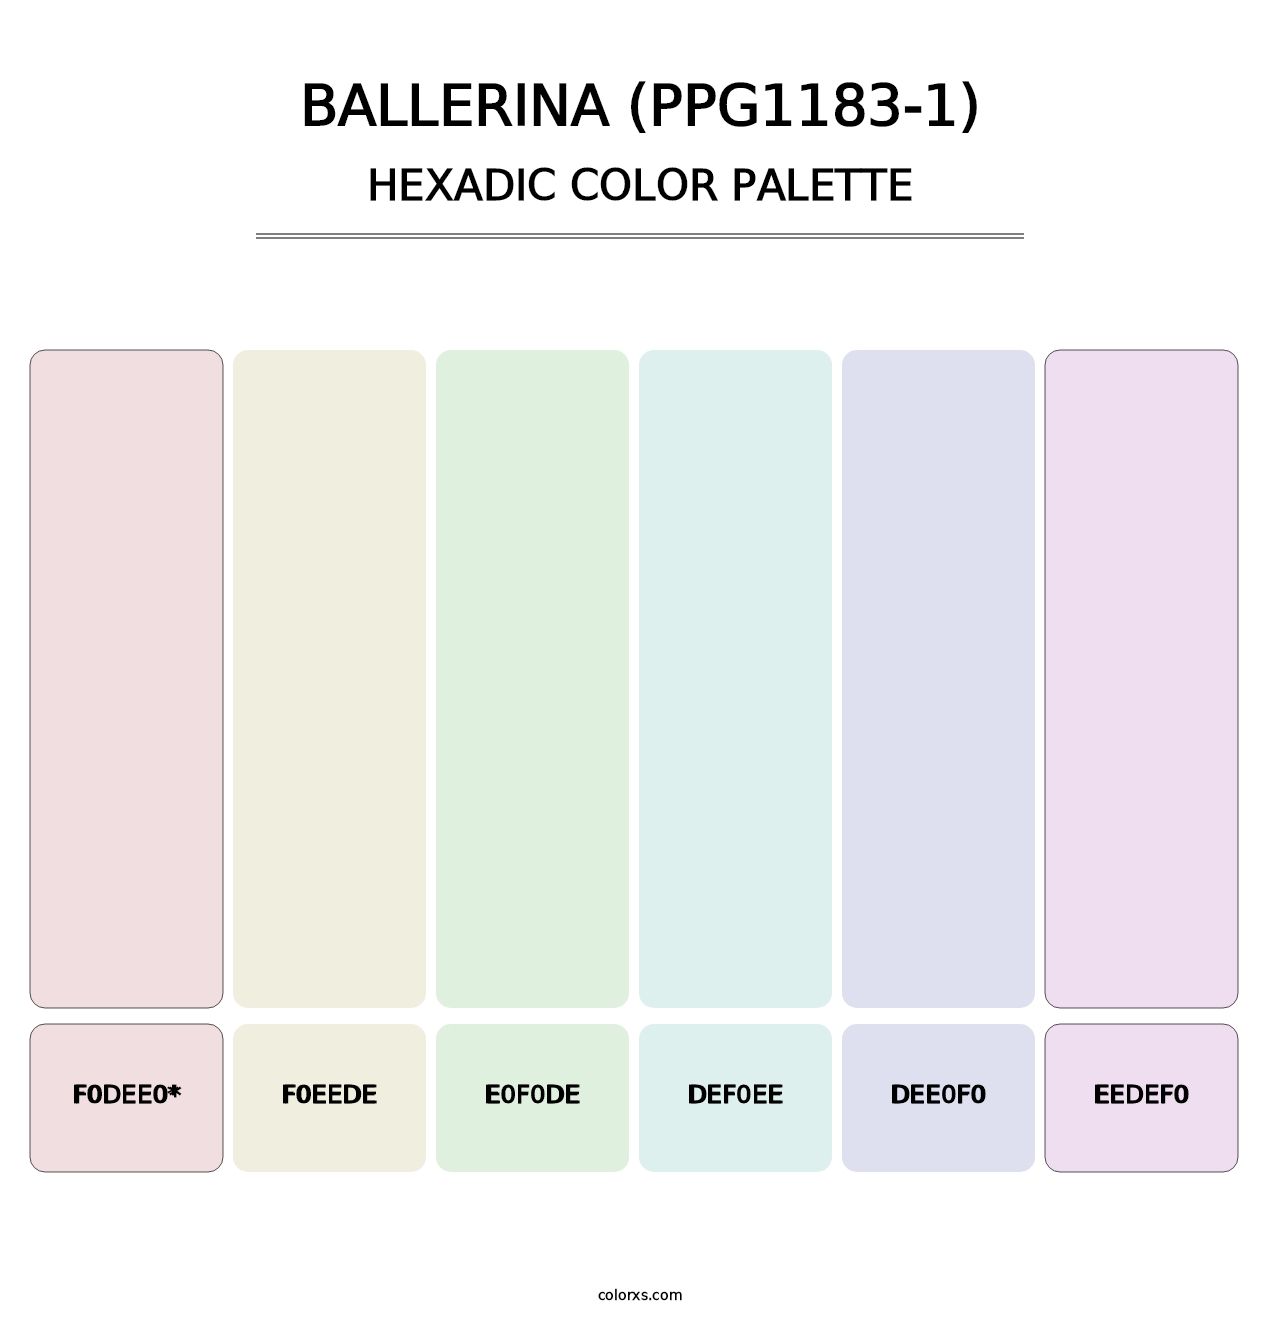 Ballerina (PPG1183-1) - Hexadic Color Palette